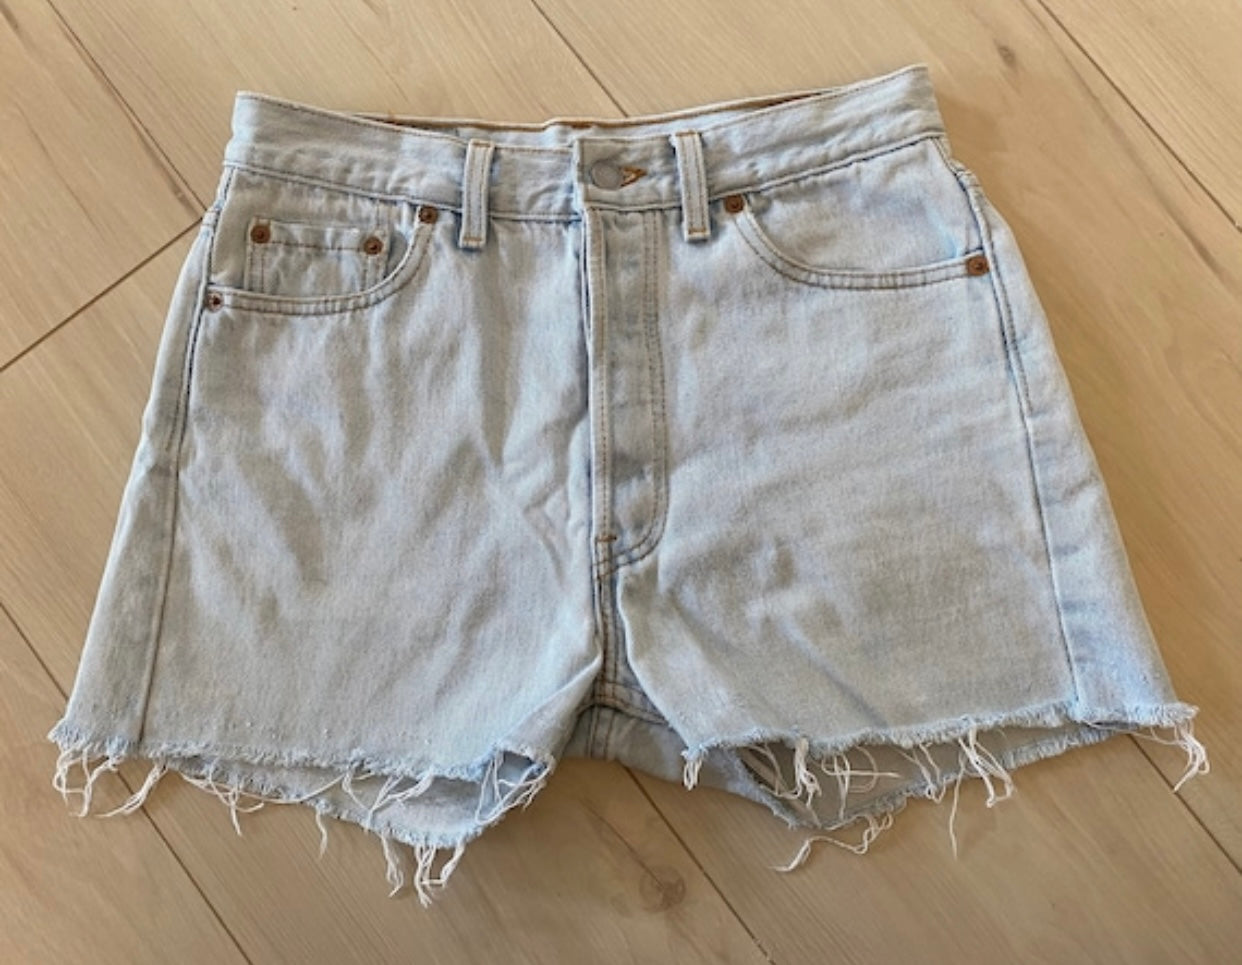 Size 27/28 Levi’s 501 light wash shorts